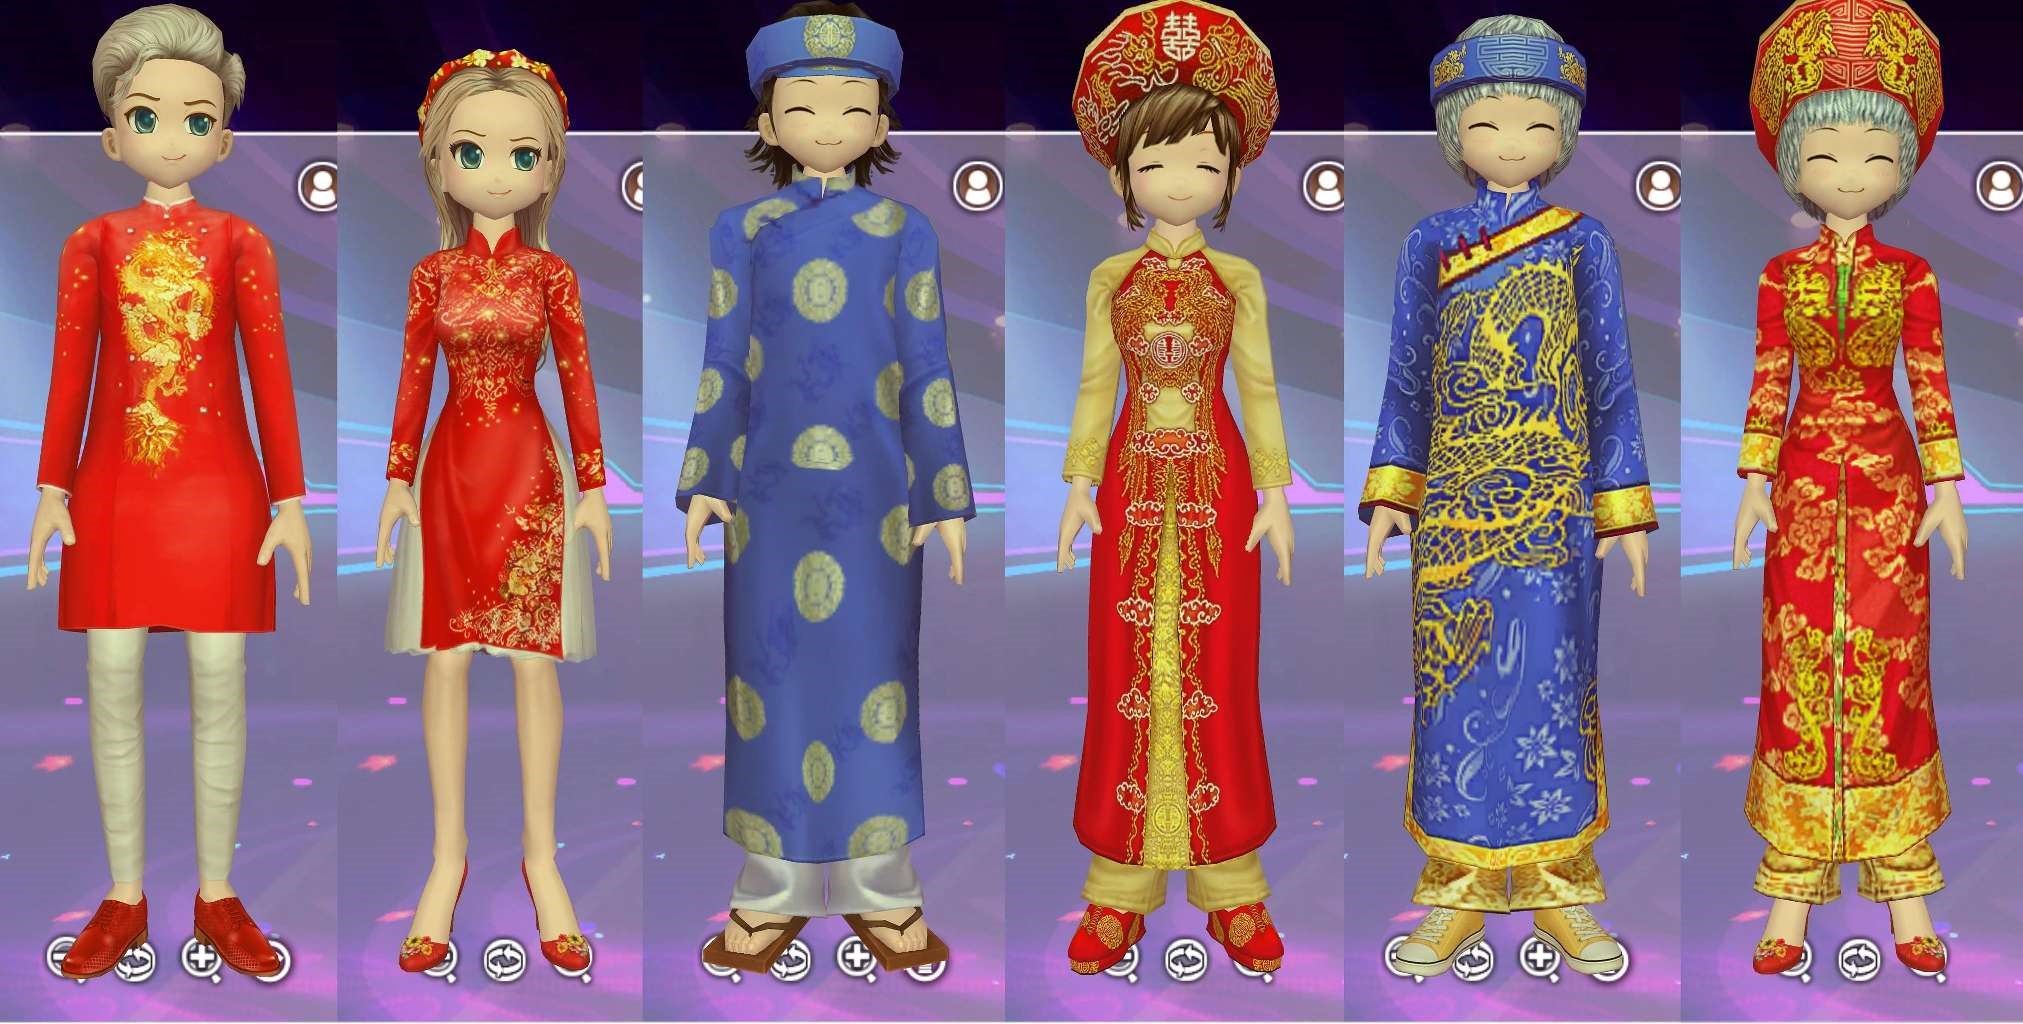 Tự hào trang phục Việt - Thời trang đậm chất văn hoá Việt Nam xuất hiện trong Audition - ảnh 3